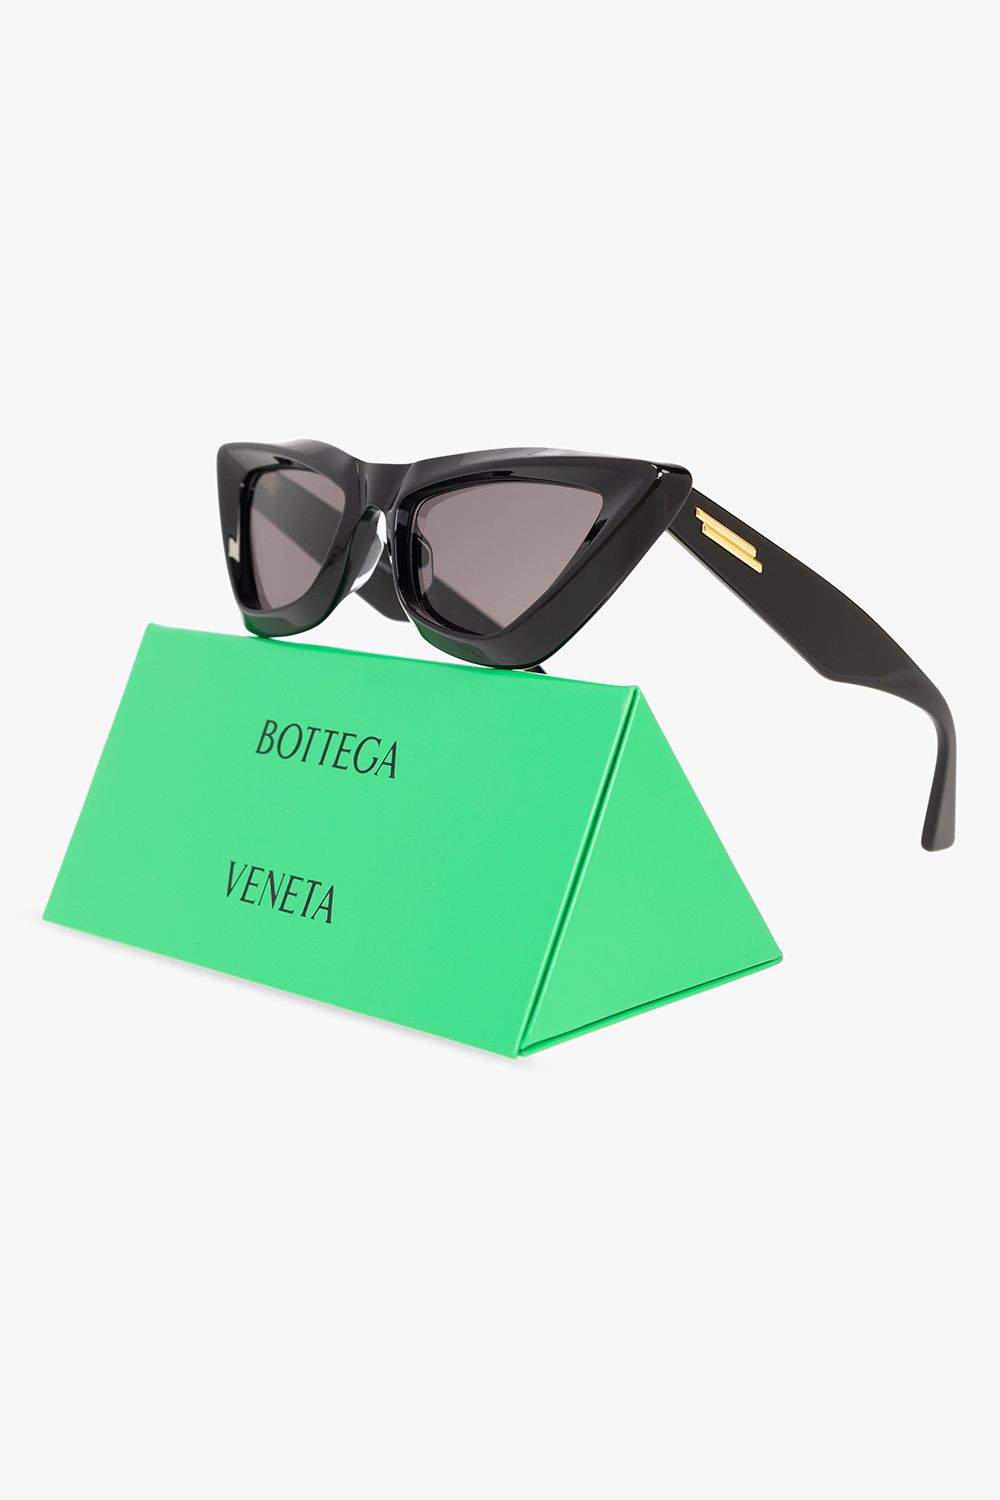 Bottega Veneta mage sunglasses